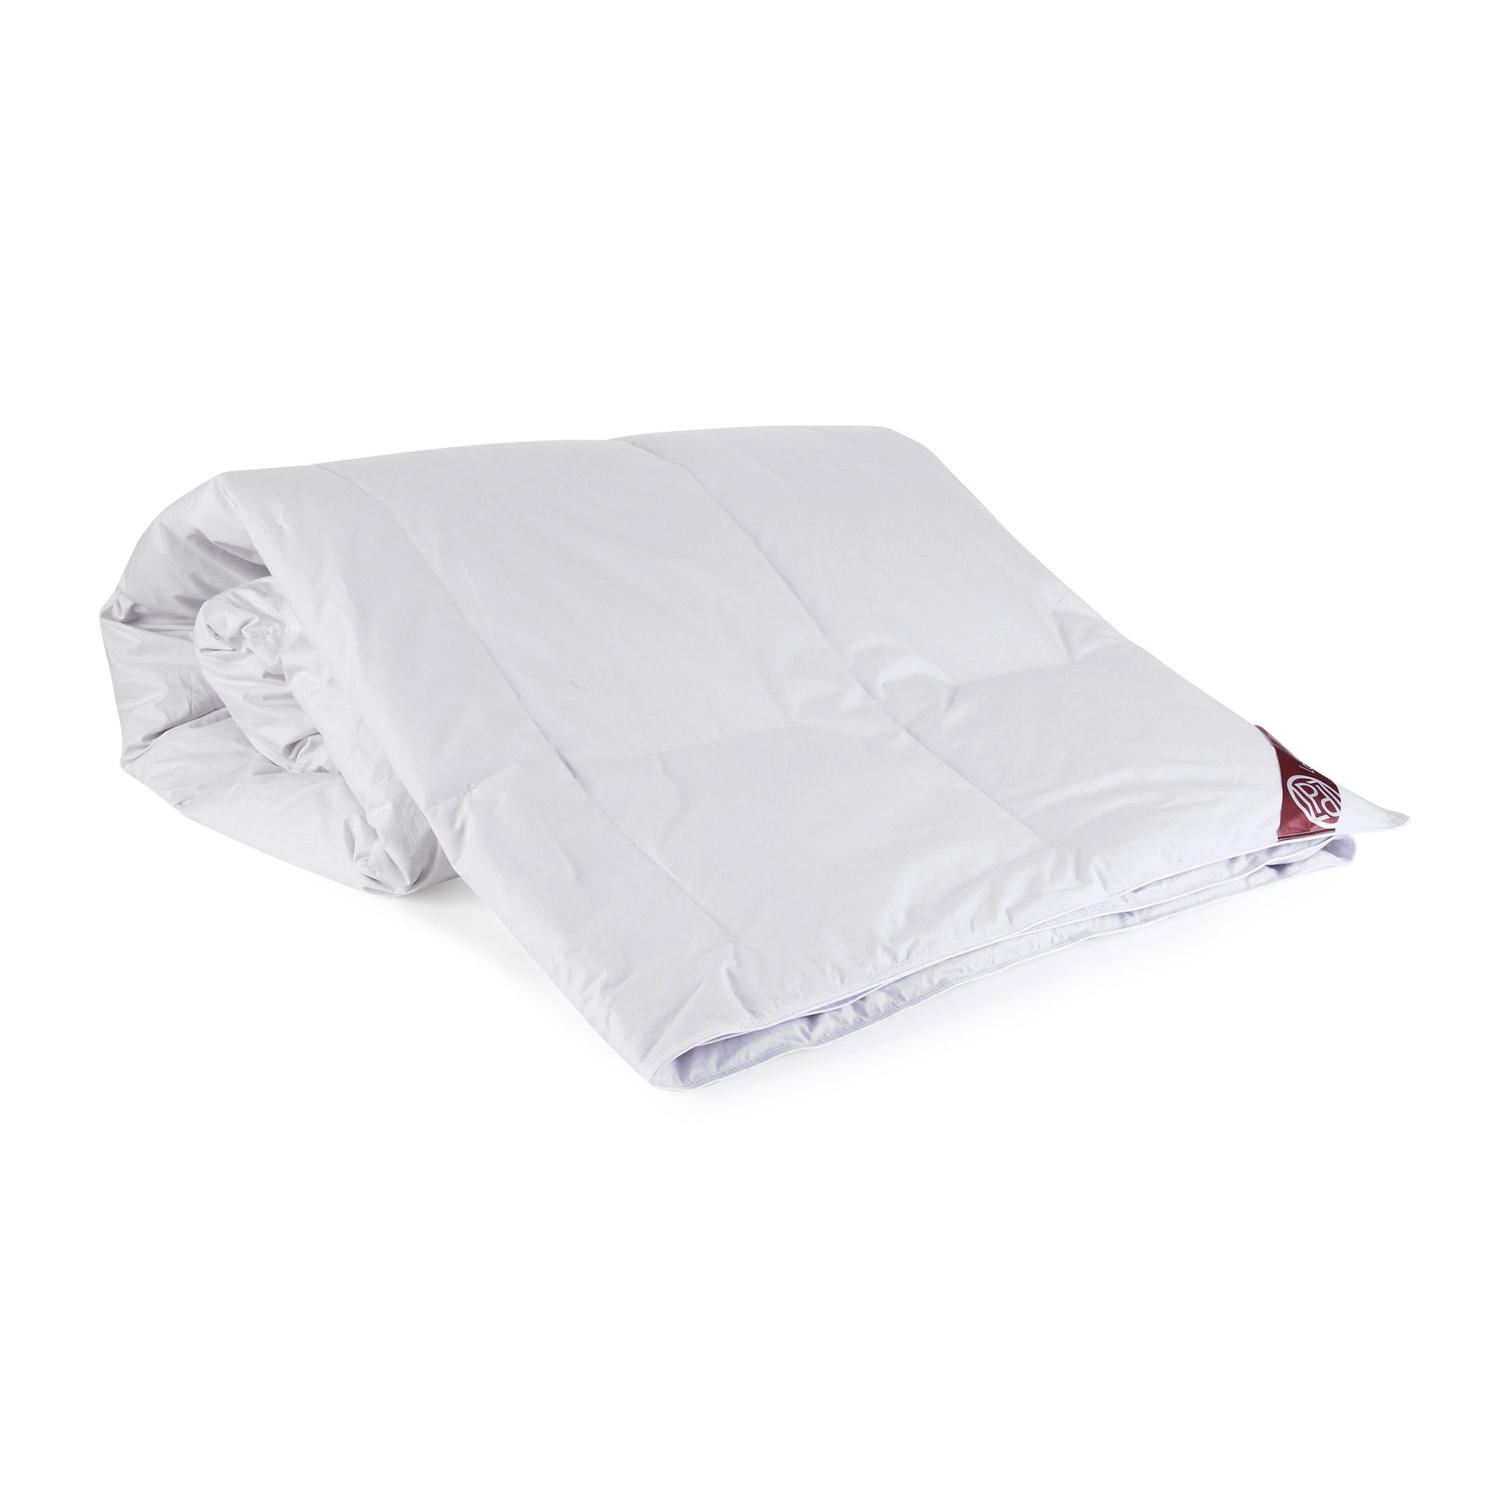 Пуховое одеяло Louis Pascal Камилла белое 200х220 см (ЛП2034), цвет белый